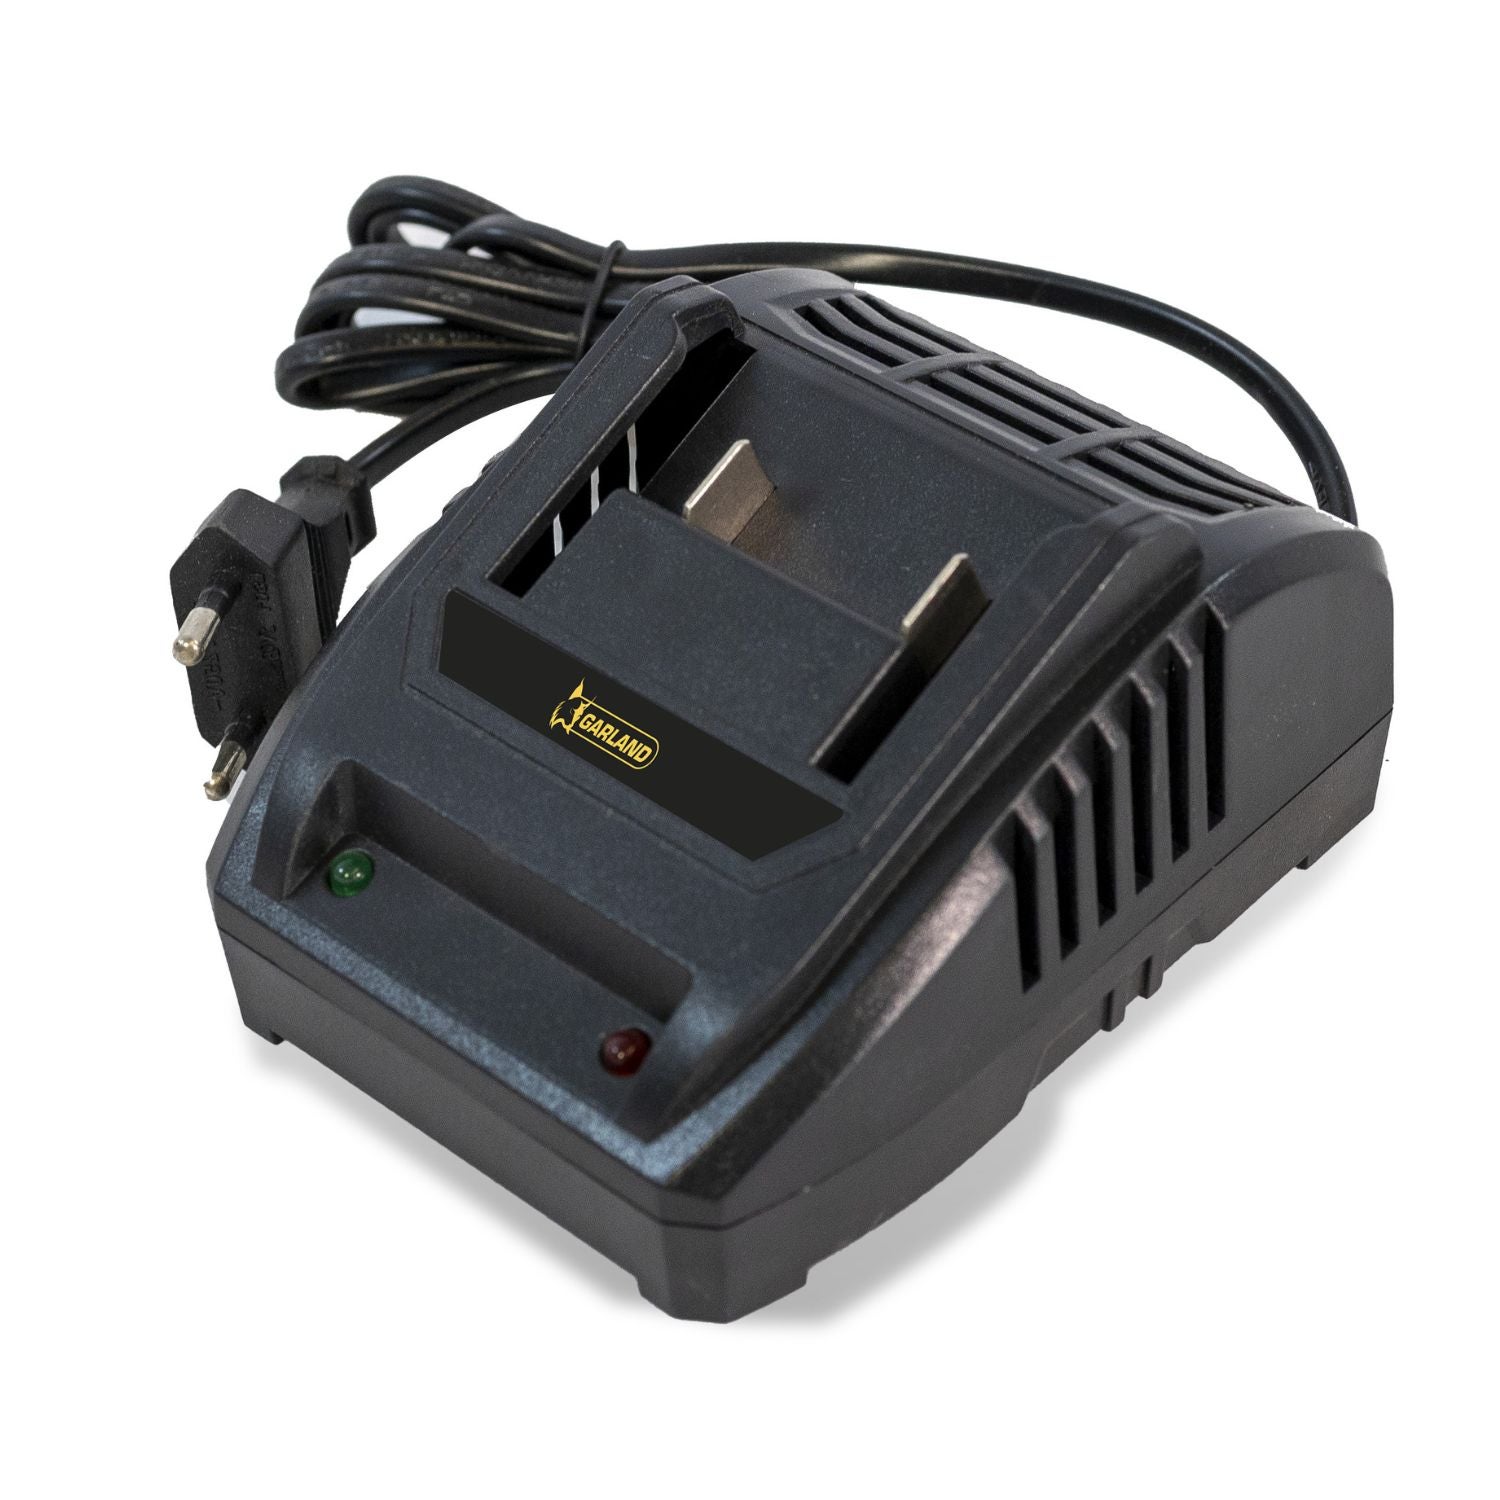 Cargador de baterías - garland keeper 20v single charger fast-v23